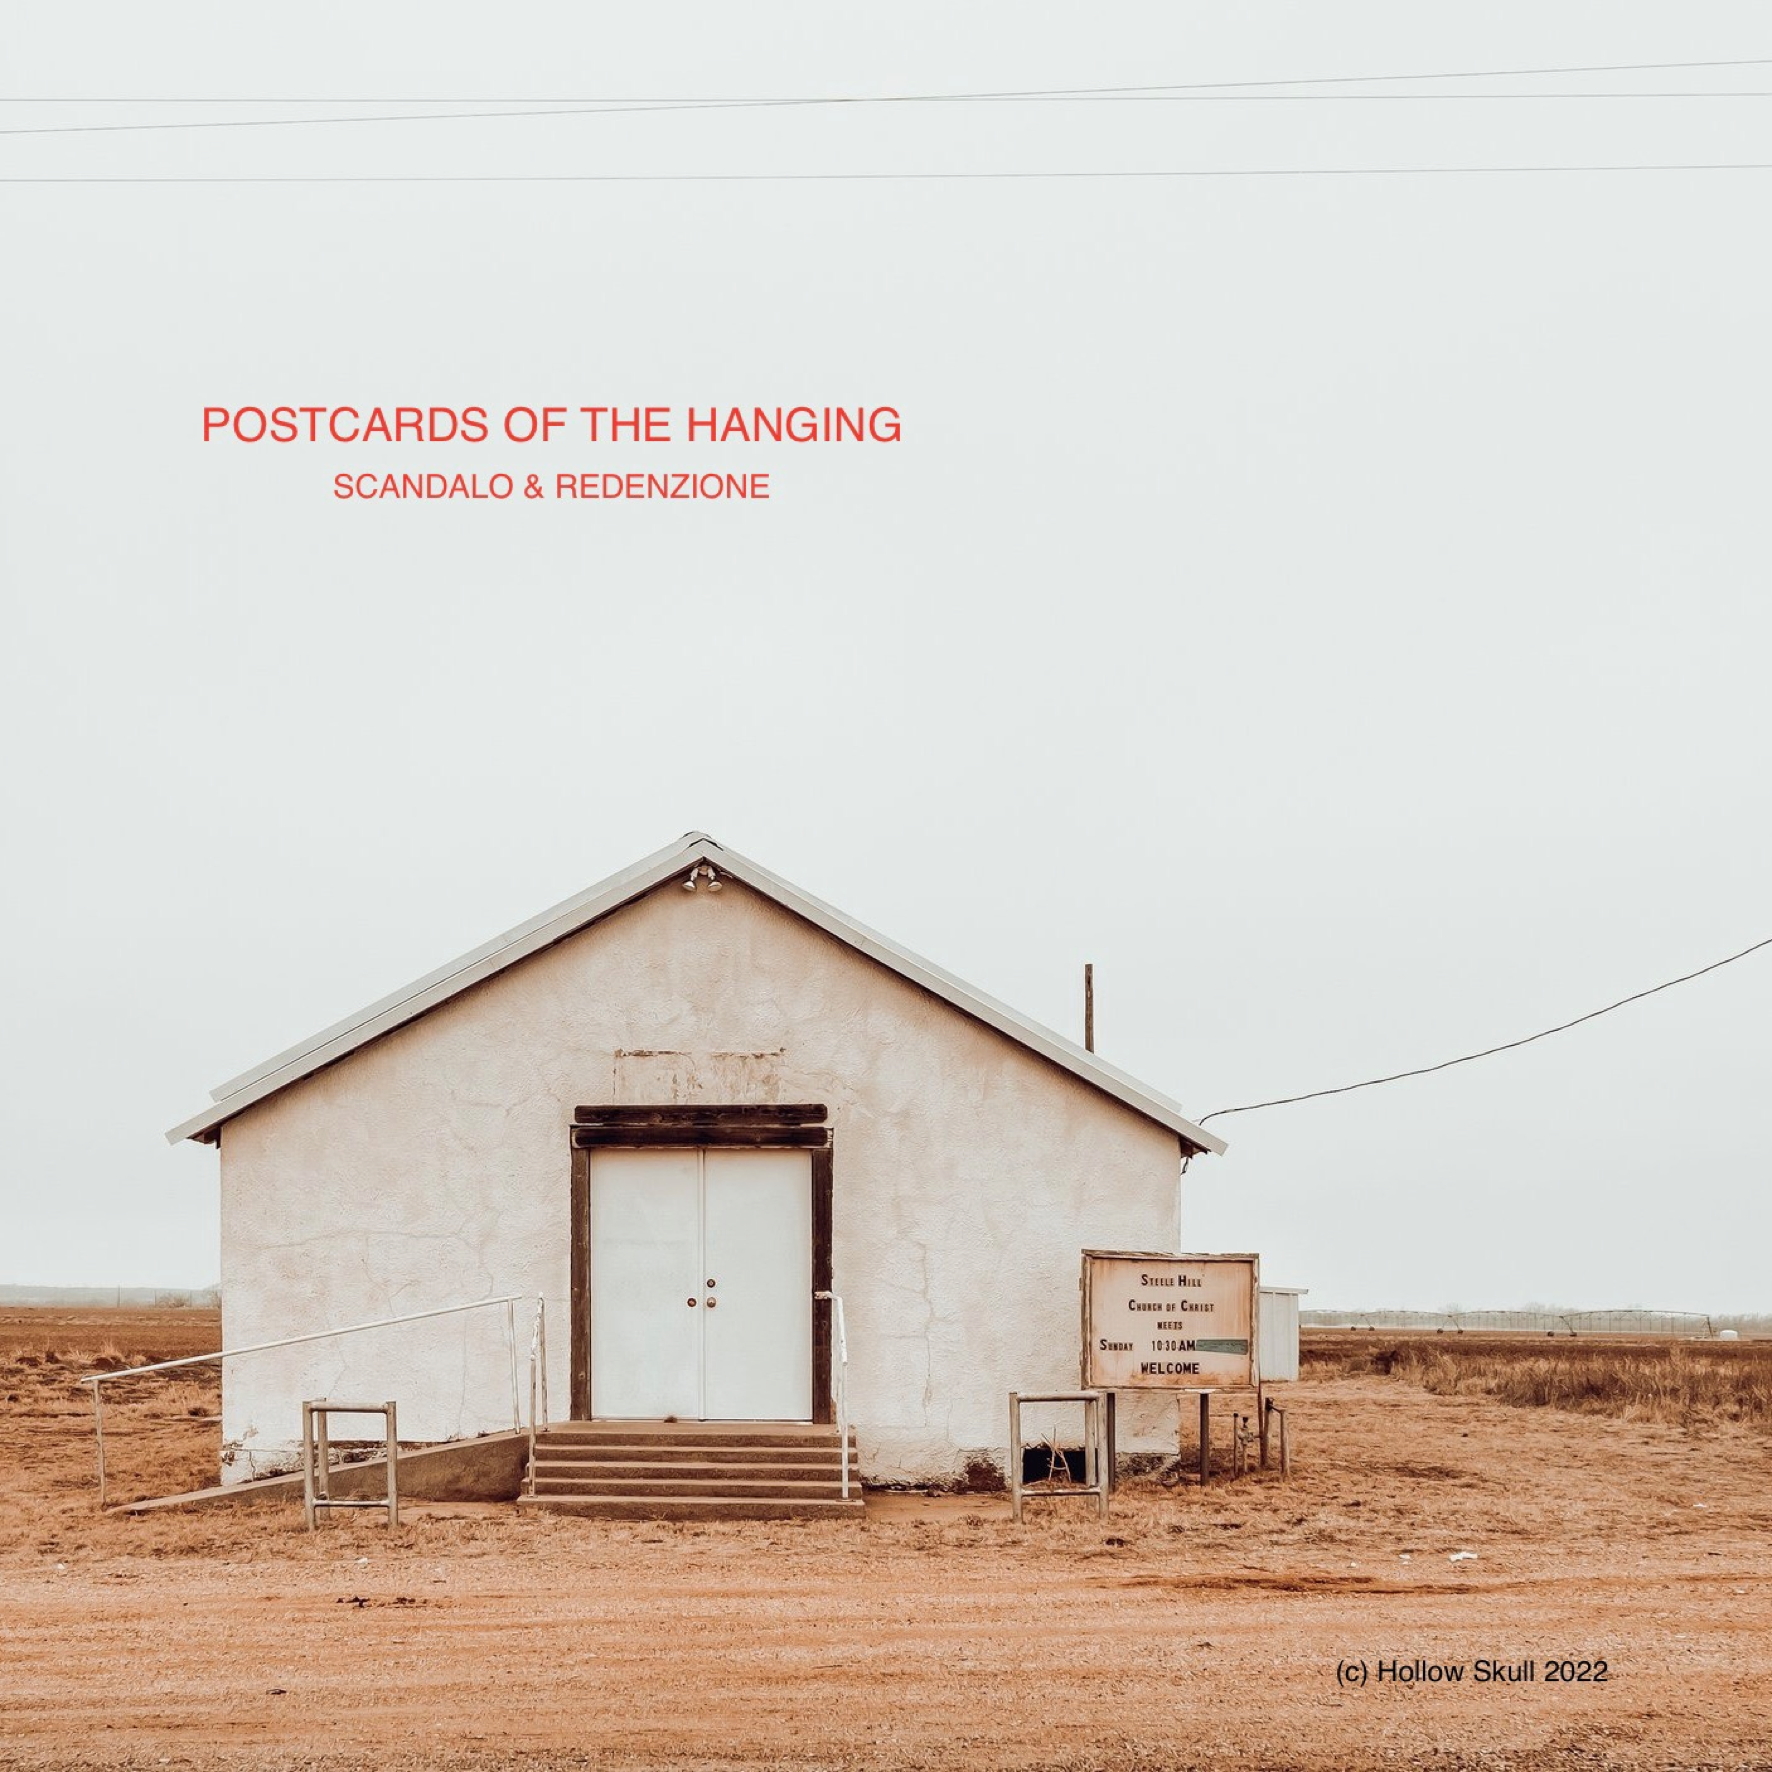 Scandalo e redenzione, die neue „Band” von Stefano Predelli: „Postcards Of The Hanging” der Titel des neuen Albums.